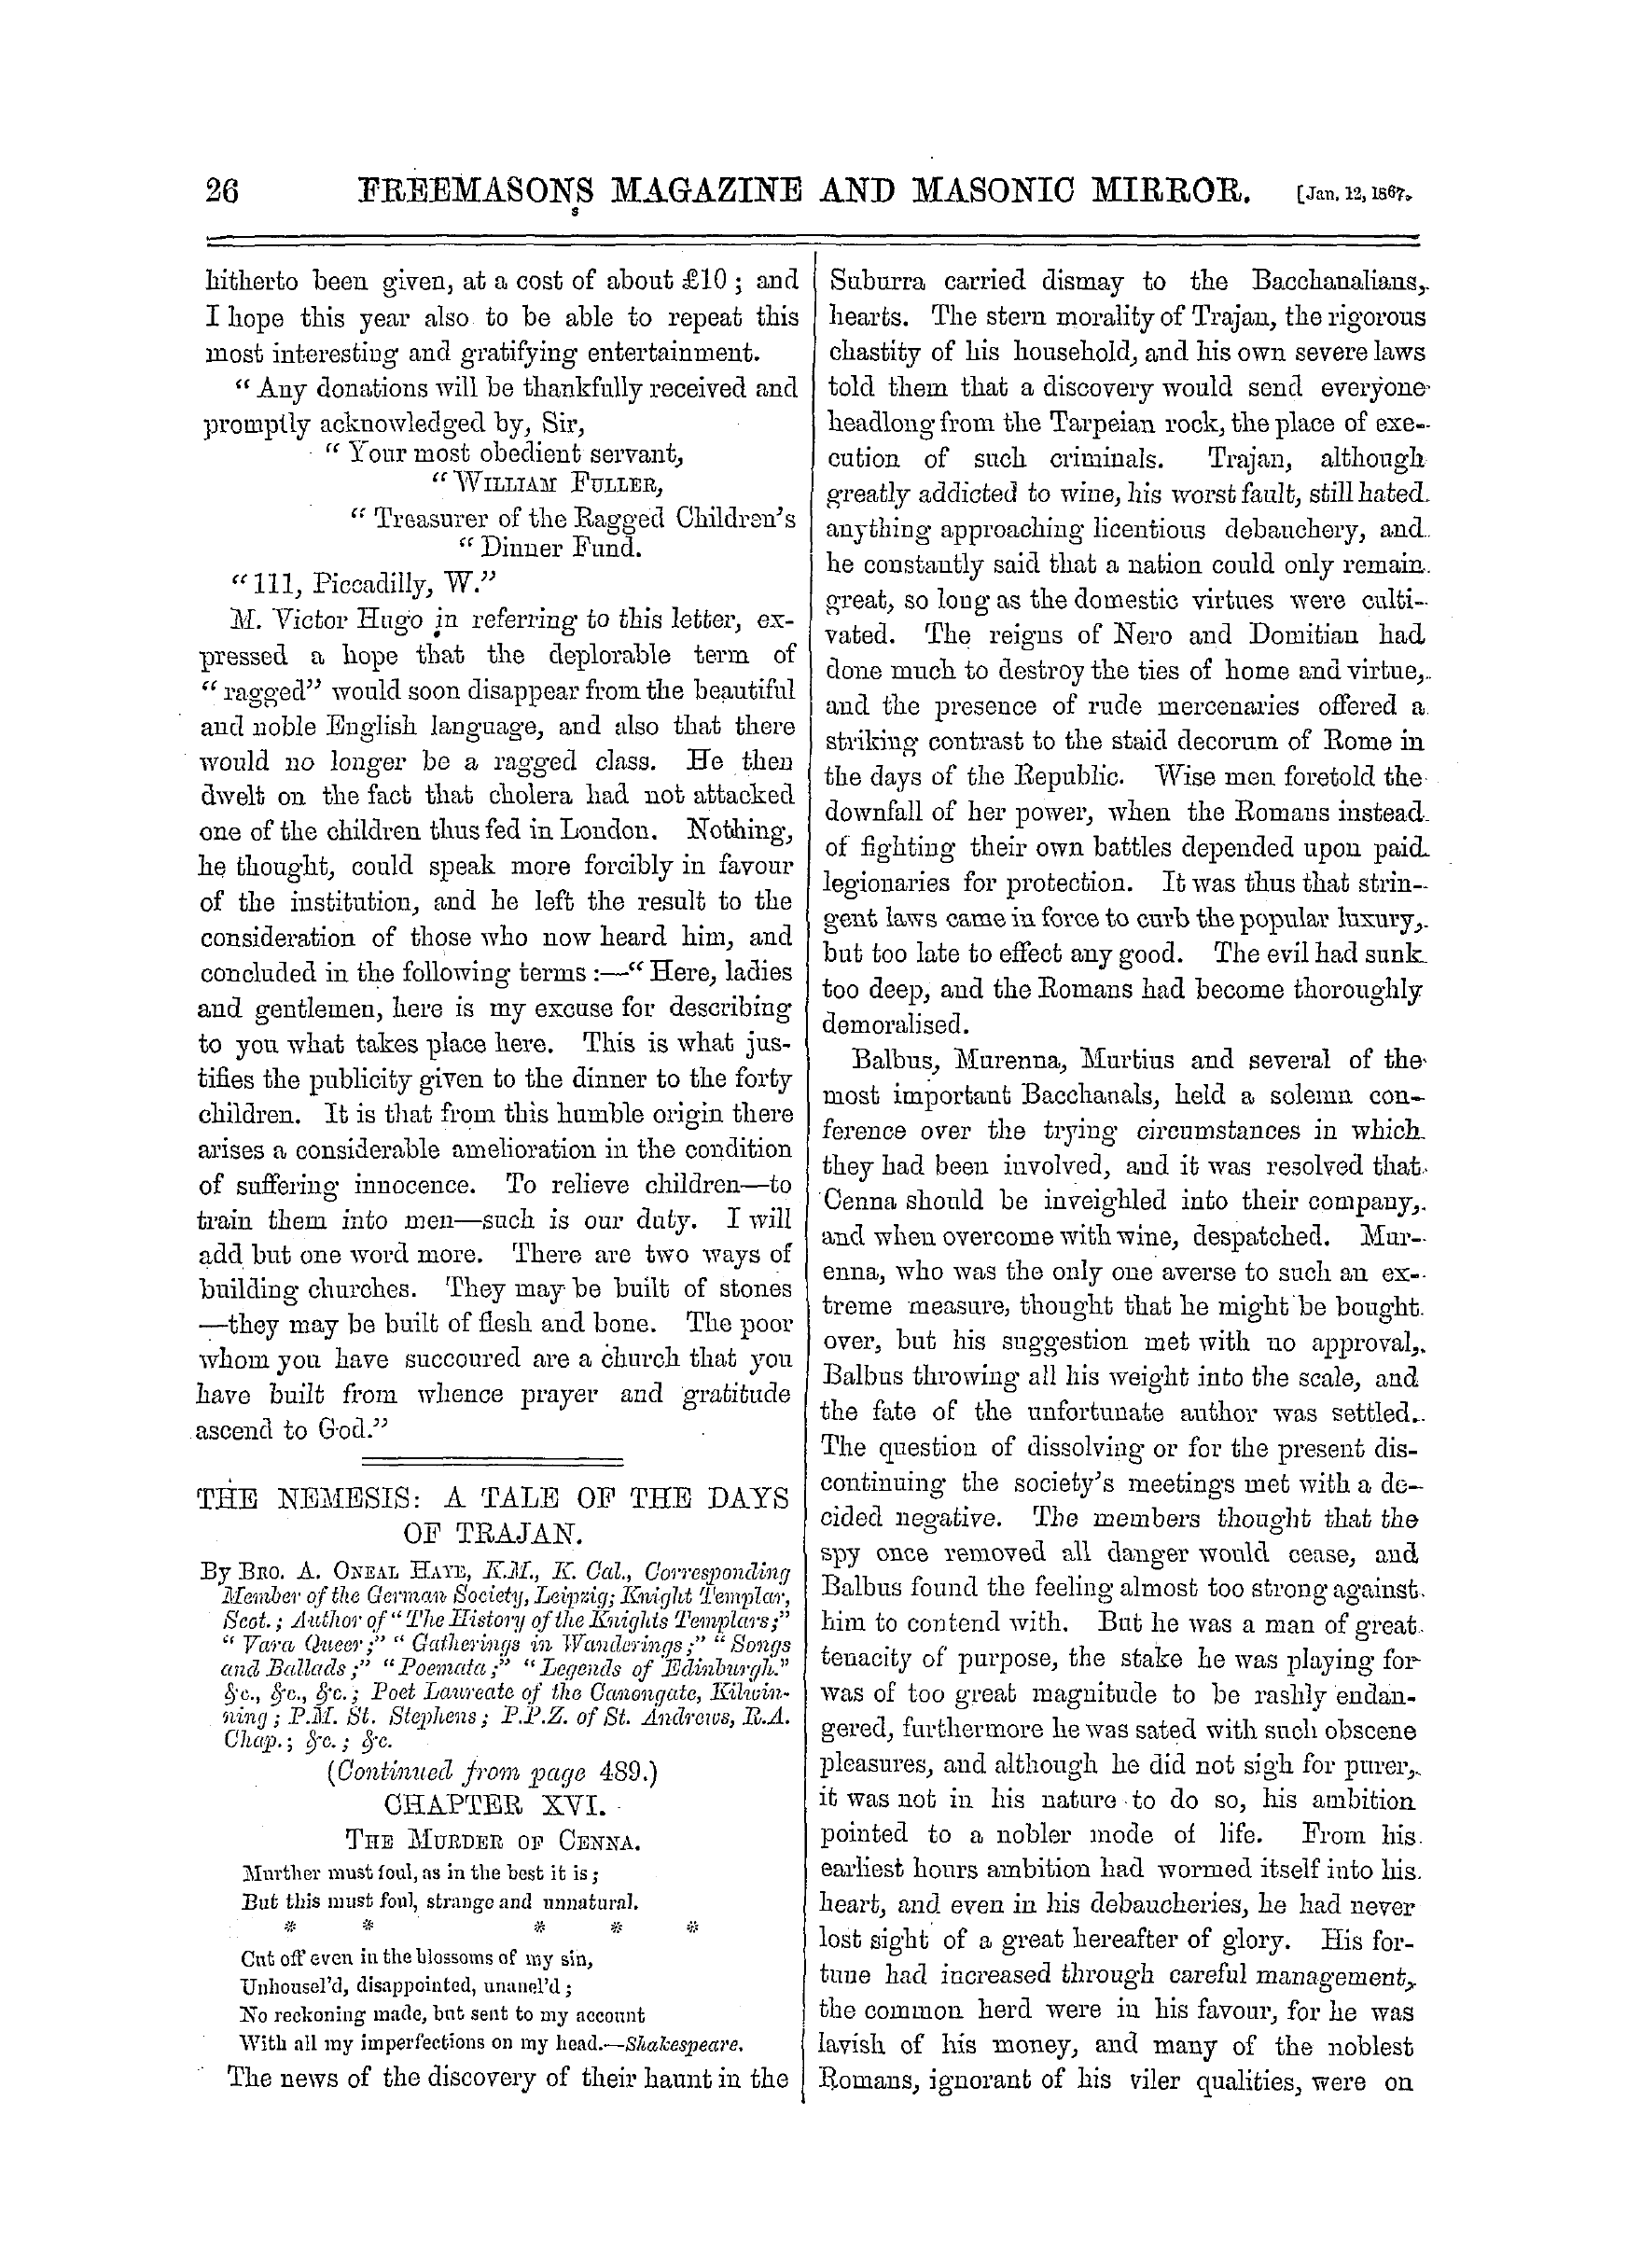 The Freemasons' Monthly Magazine: 1867-01-12: 6